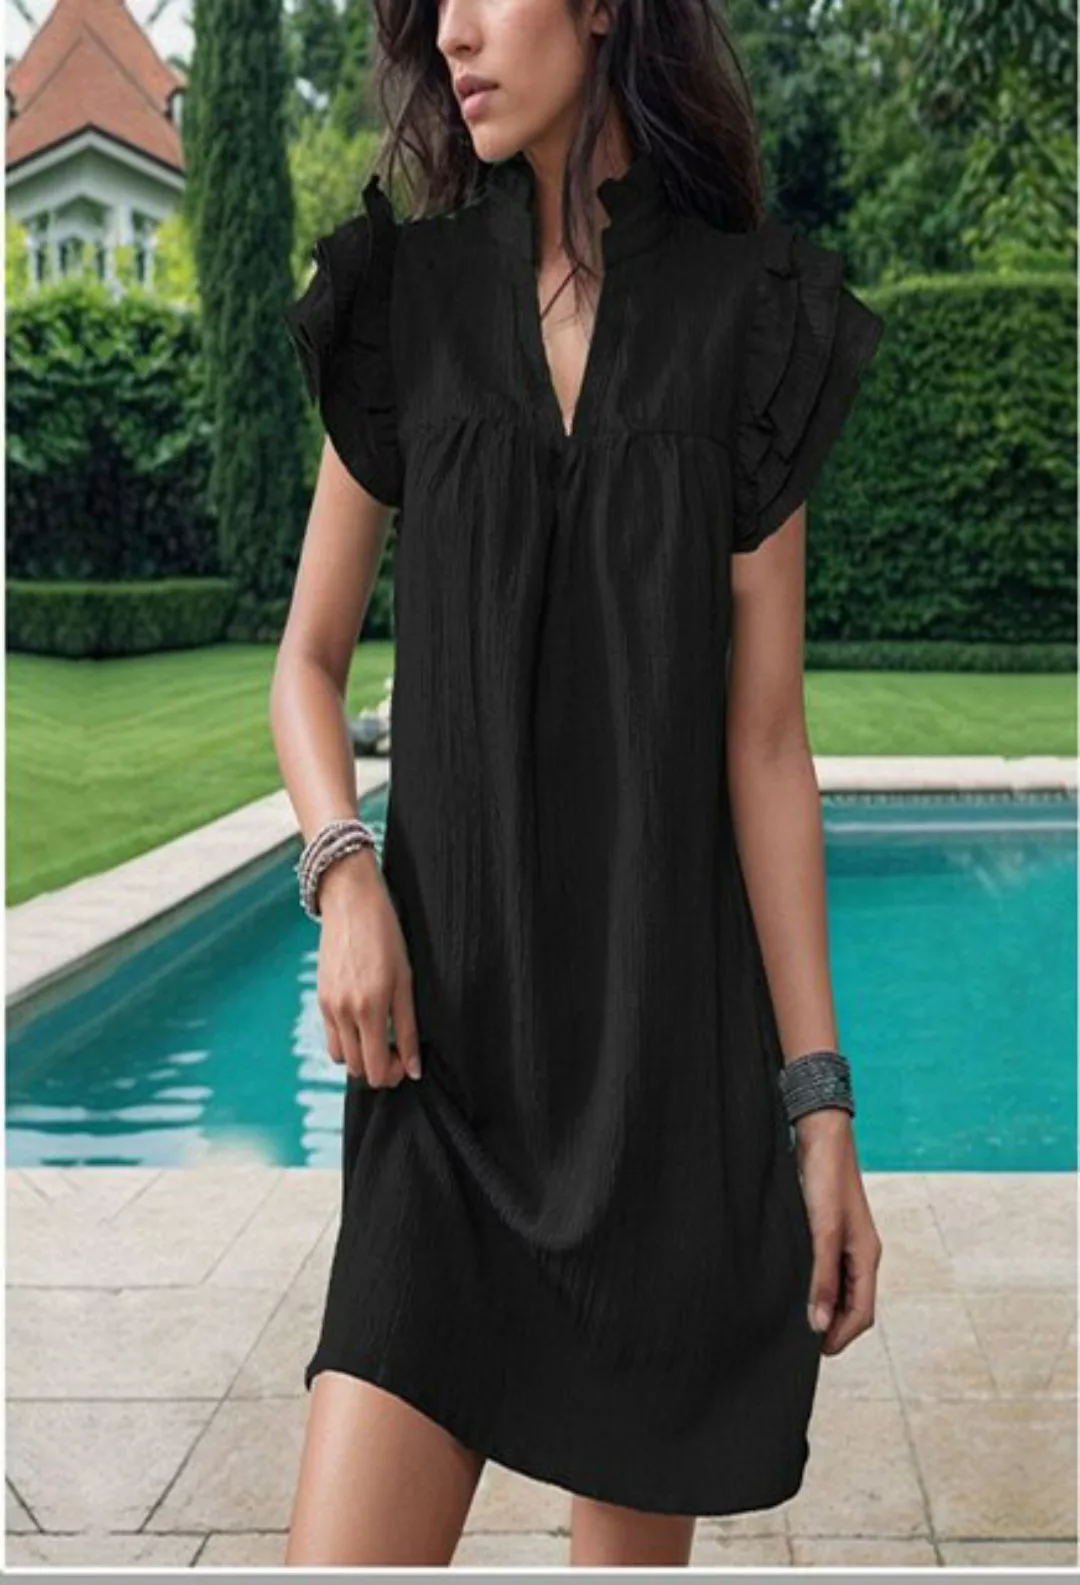 SEGUEN Sommerkleid Temperament Fashion Stehkragen Einfarbiges Kleid (Kleid günstig online kaufen